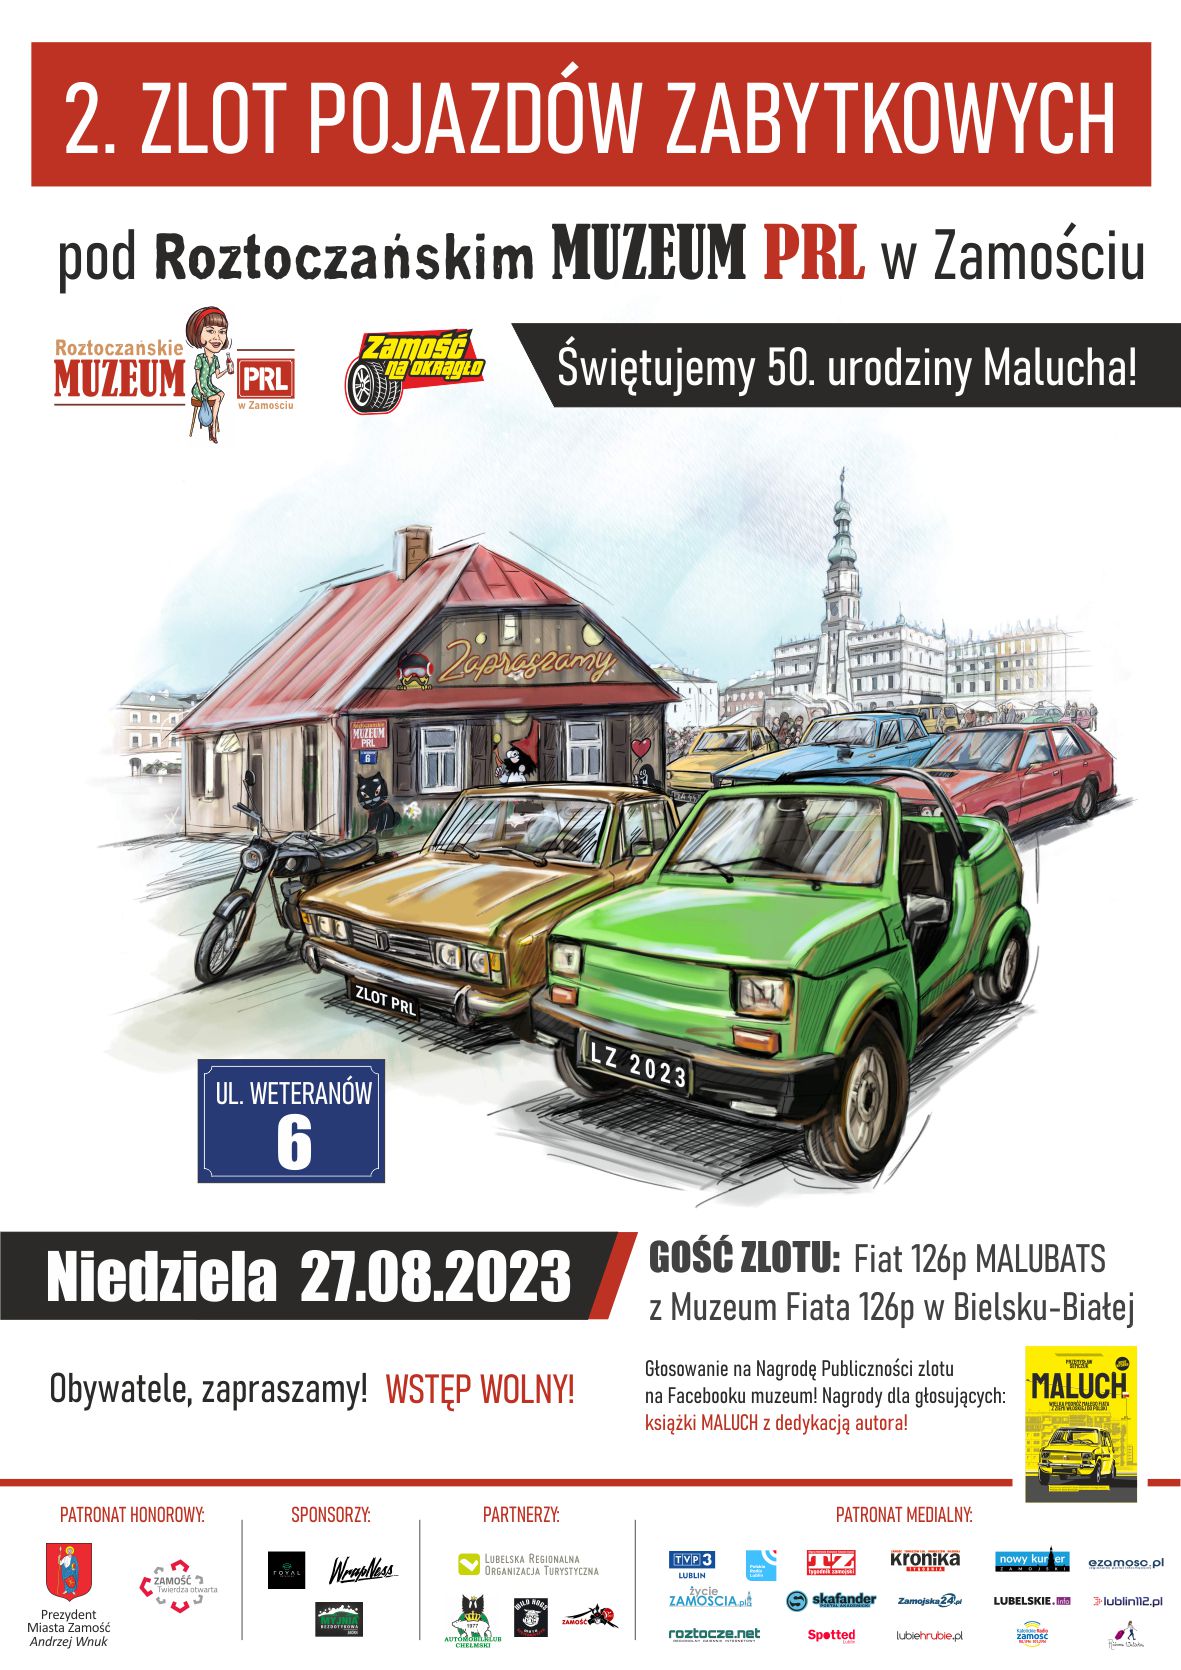 plakat zlot 1 Roztoczańskie Muzeum PRL w Zamościu zaprasza na 2. Zlot Pojazdów Zabytkowych! (PROGRAM)